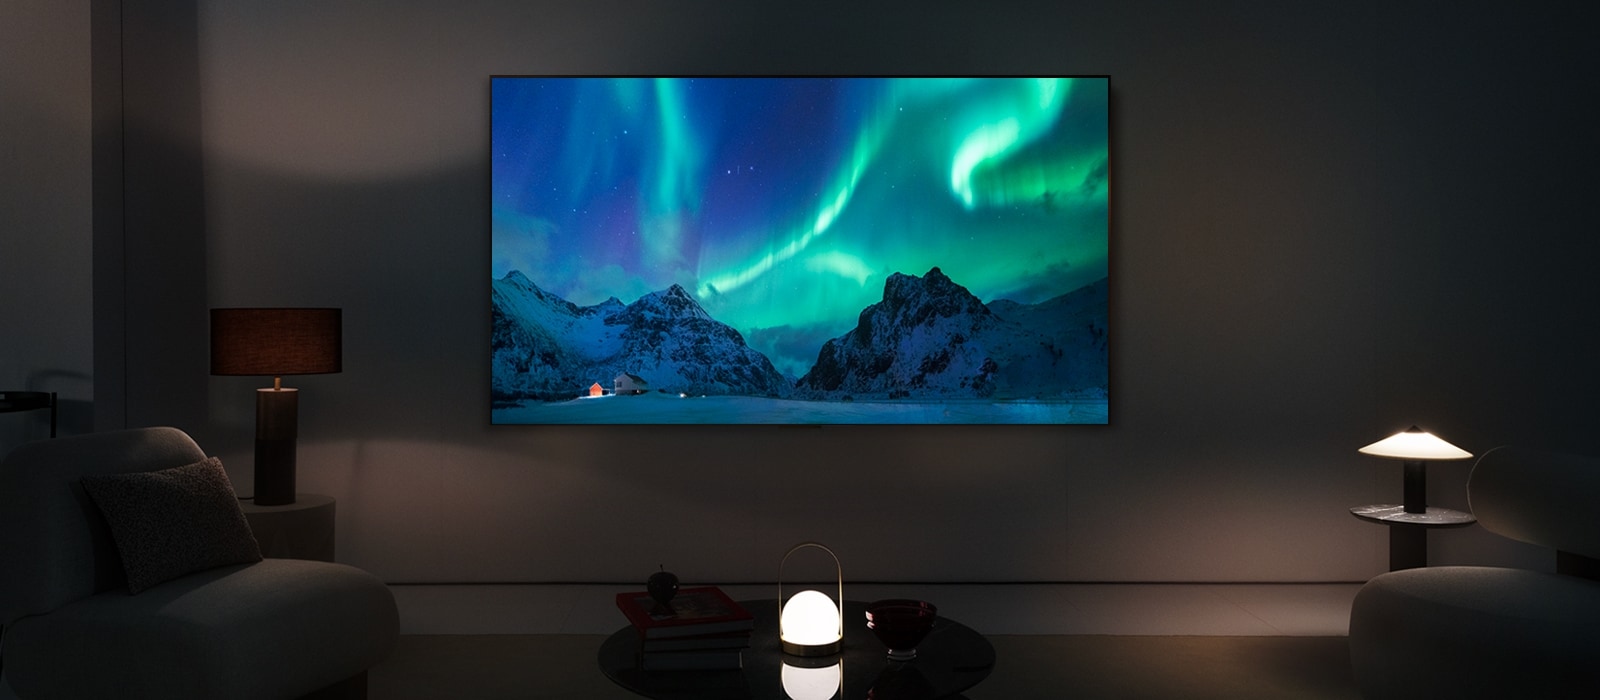 LG OLED TV في غرفة معيشة عصرية خلال الليل. صورة الشفق القطبي تظهر على الشاشة بمستويات السطوع المثالية.